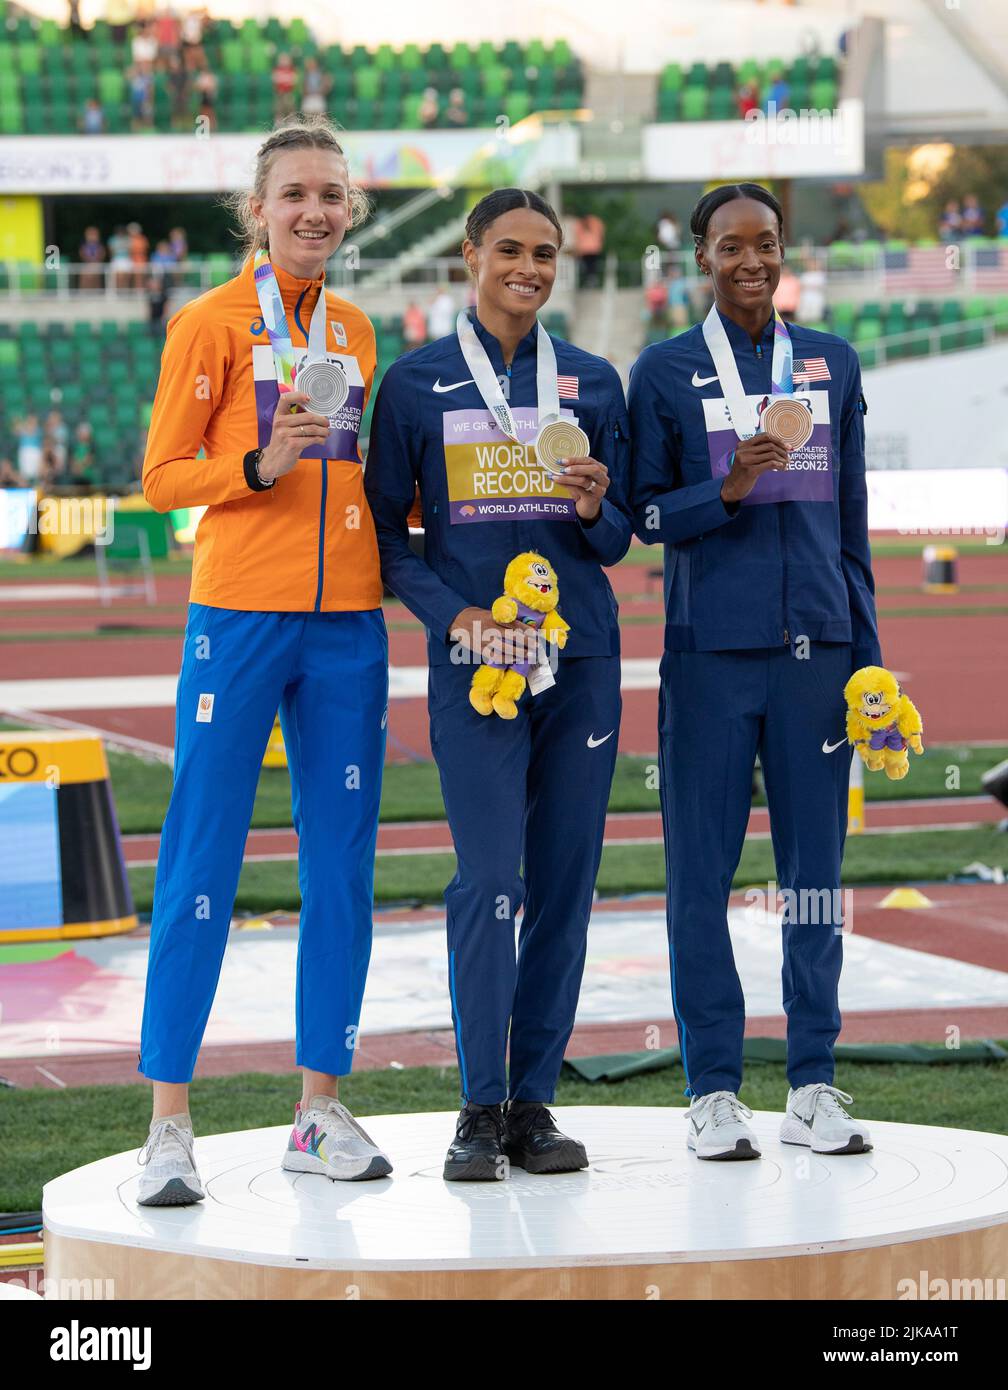 Femke bol (NED) Silver, Sydney McLaughlin (Etats-Unis) Gold et Dalilah Muhammad (Etats-Unis) Bronze recevant des médailles pour la finale des 400m haies des femmes sur da Banque D'Images